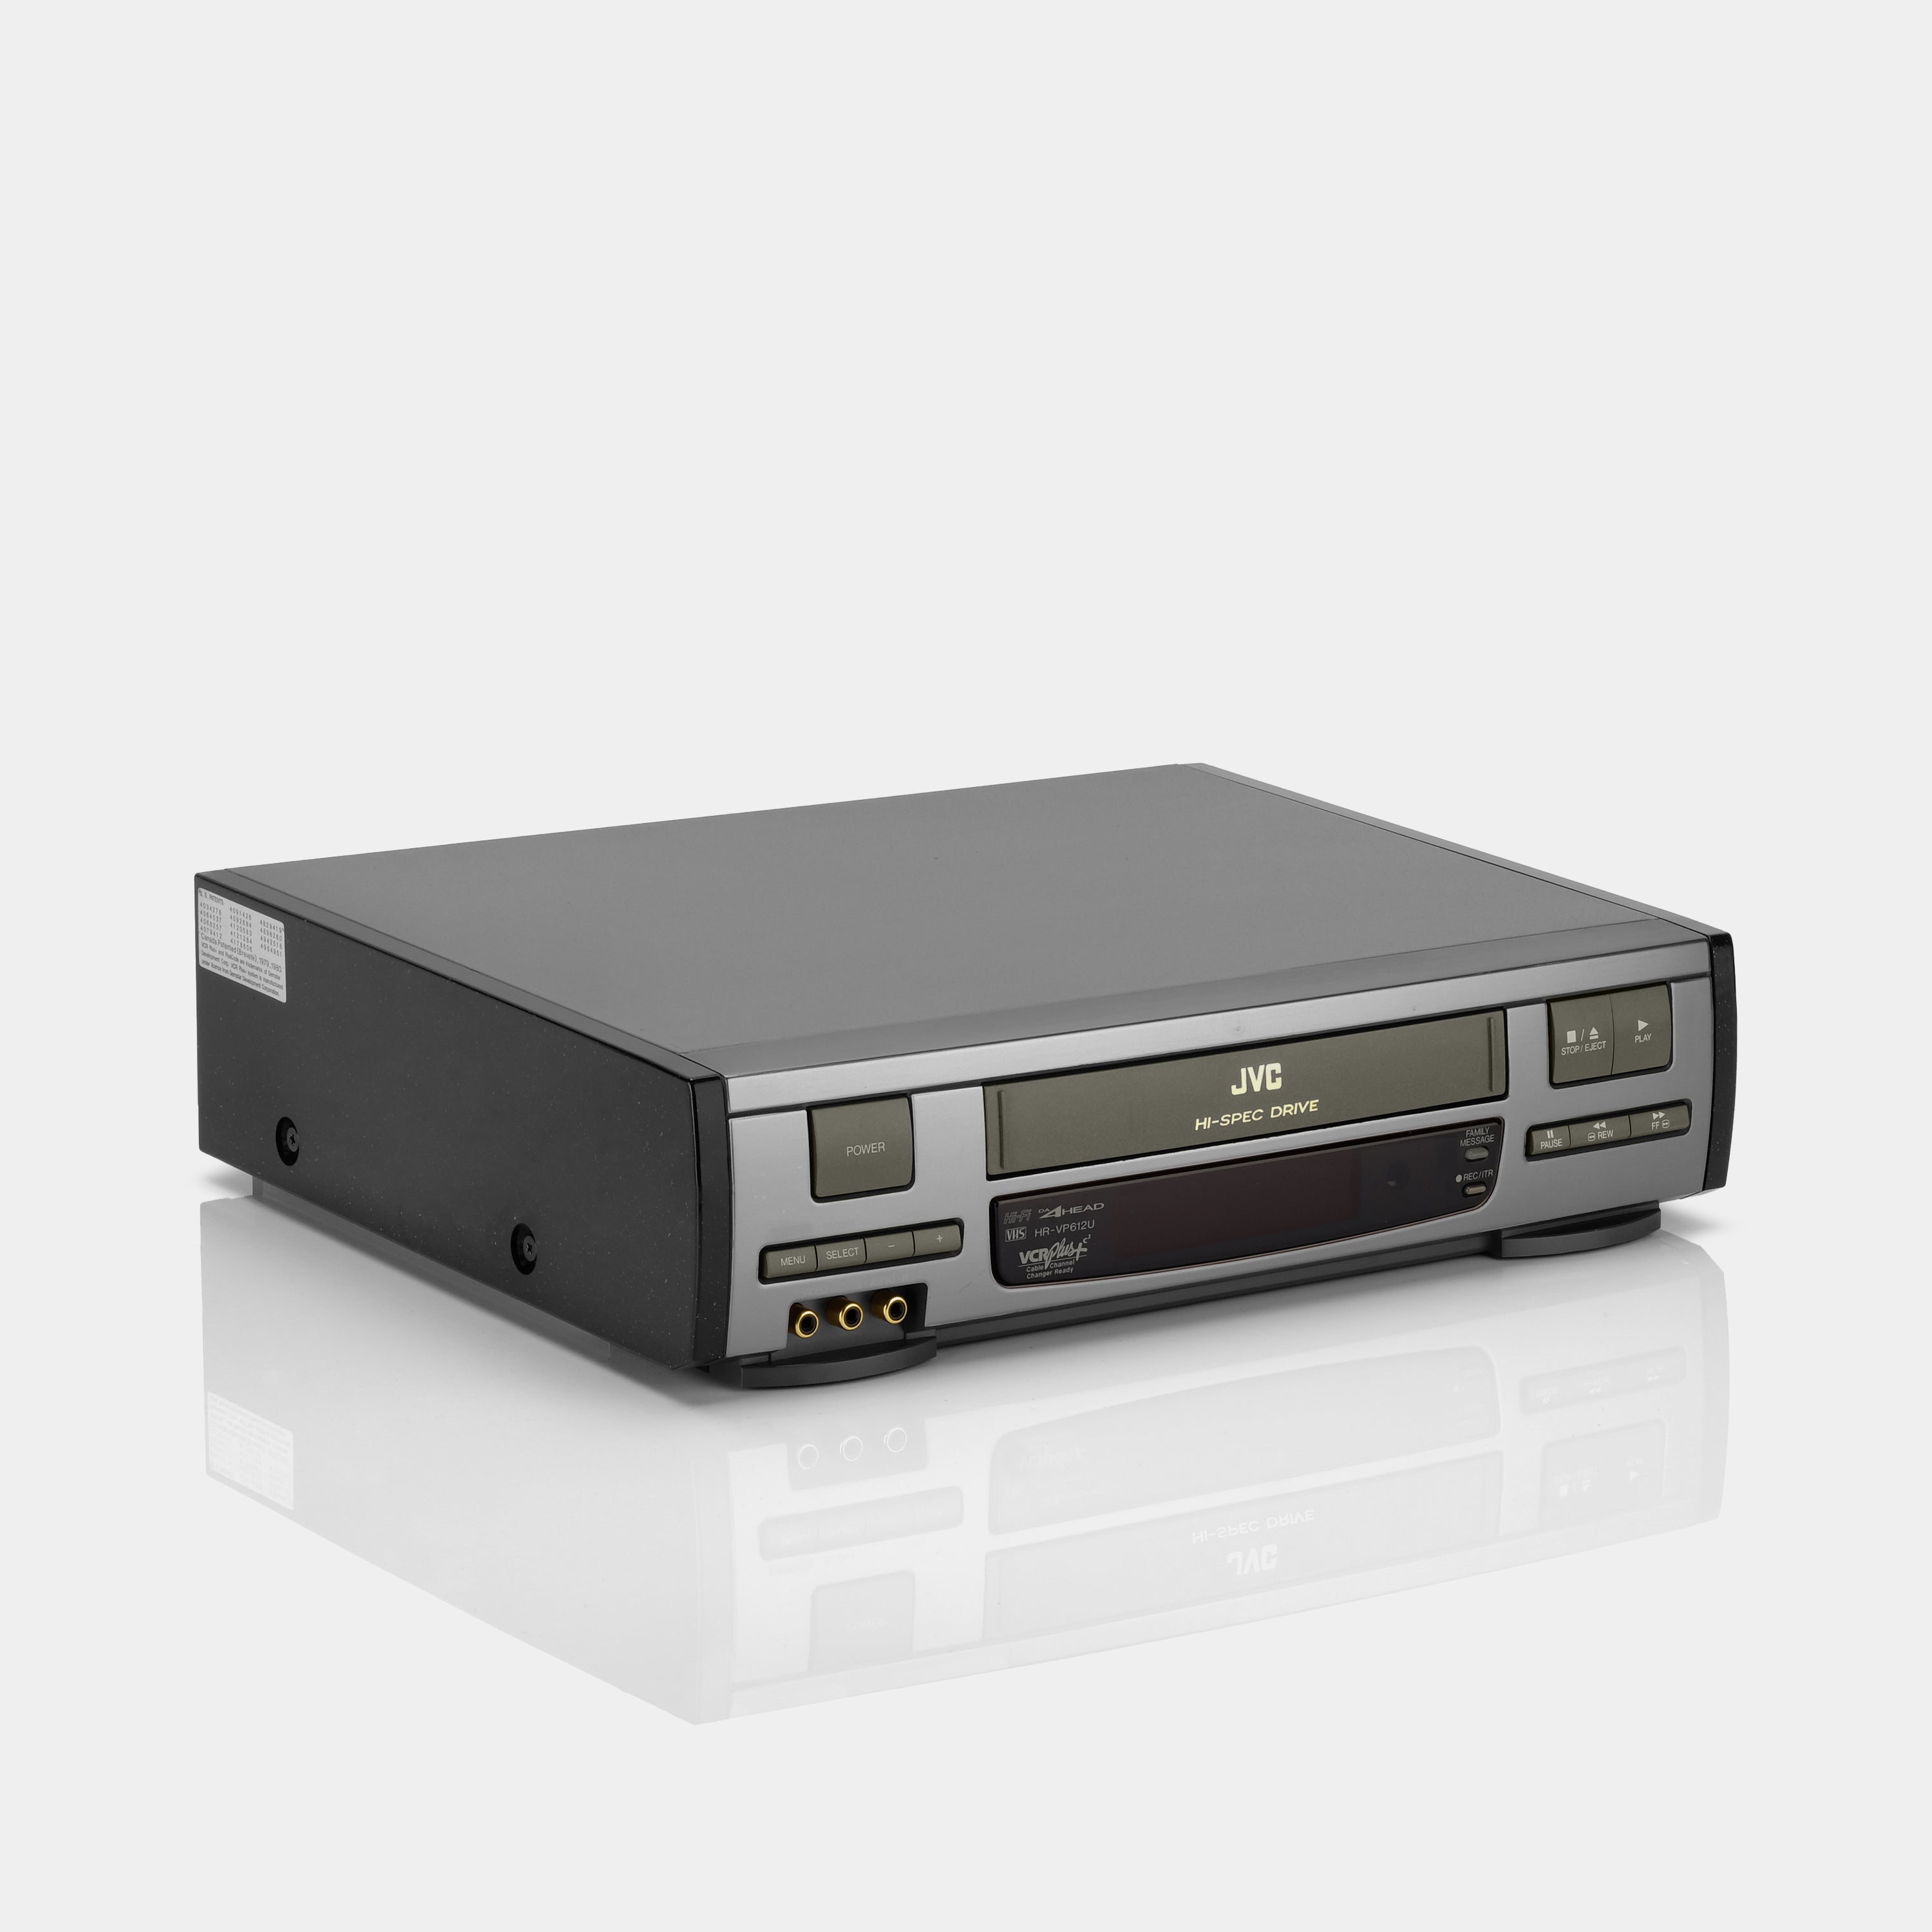 JVC HR-VP612U VCR VHS Player